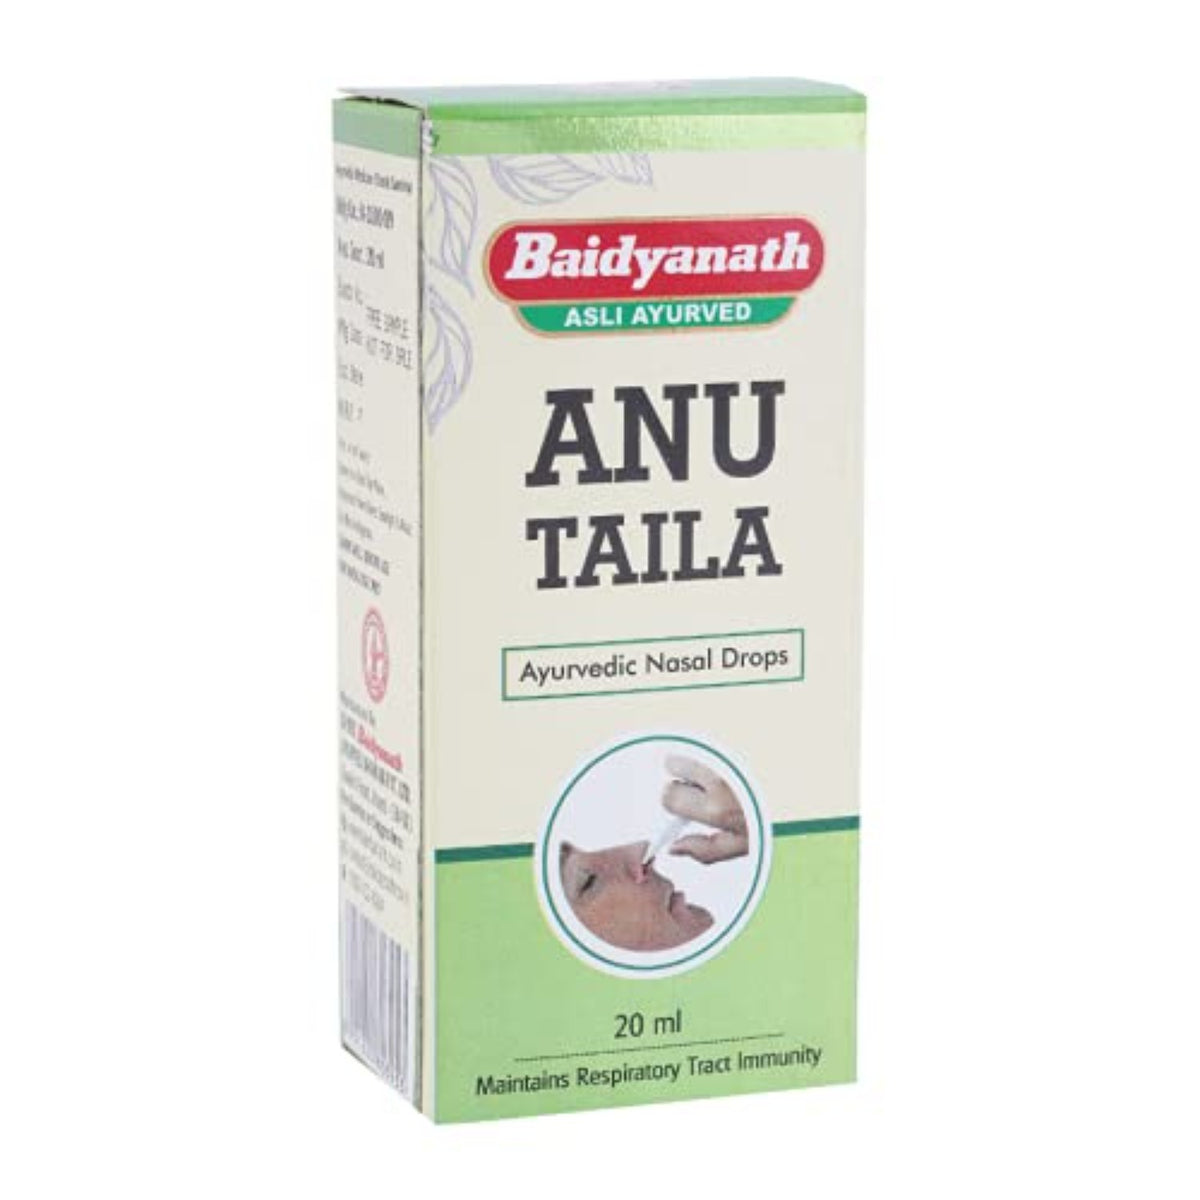 Baidyanath Ayurvedic (Jhansi) Anu Taila Ayurvedic Nasal Drop 20ml